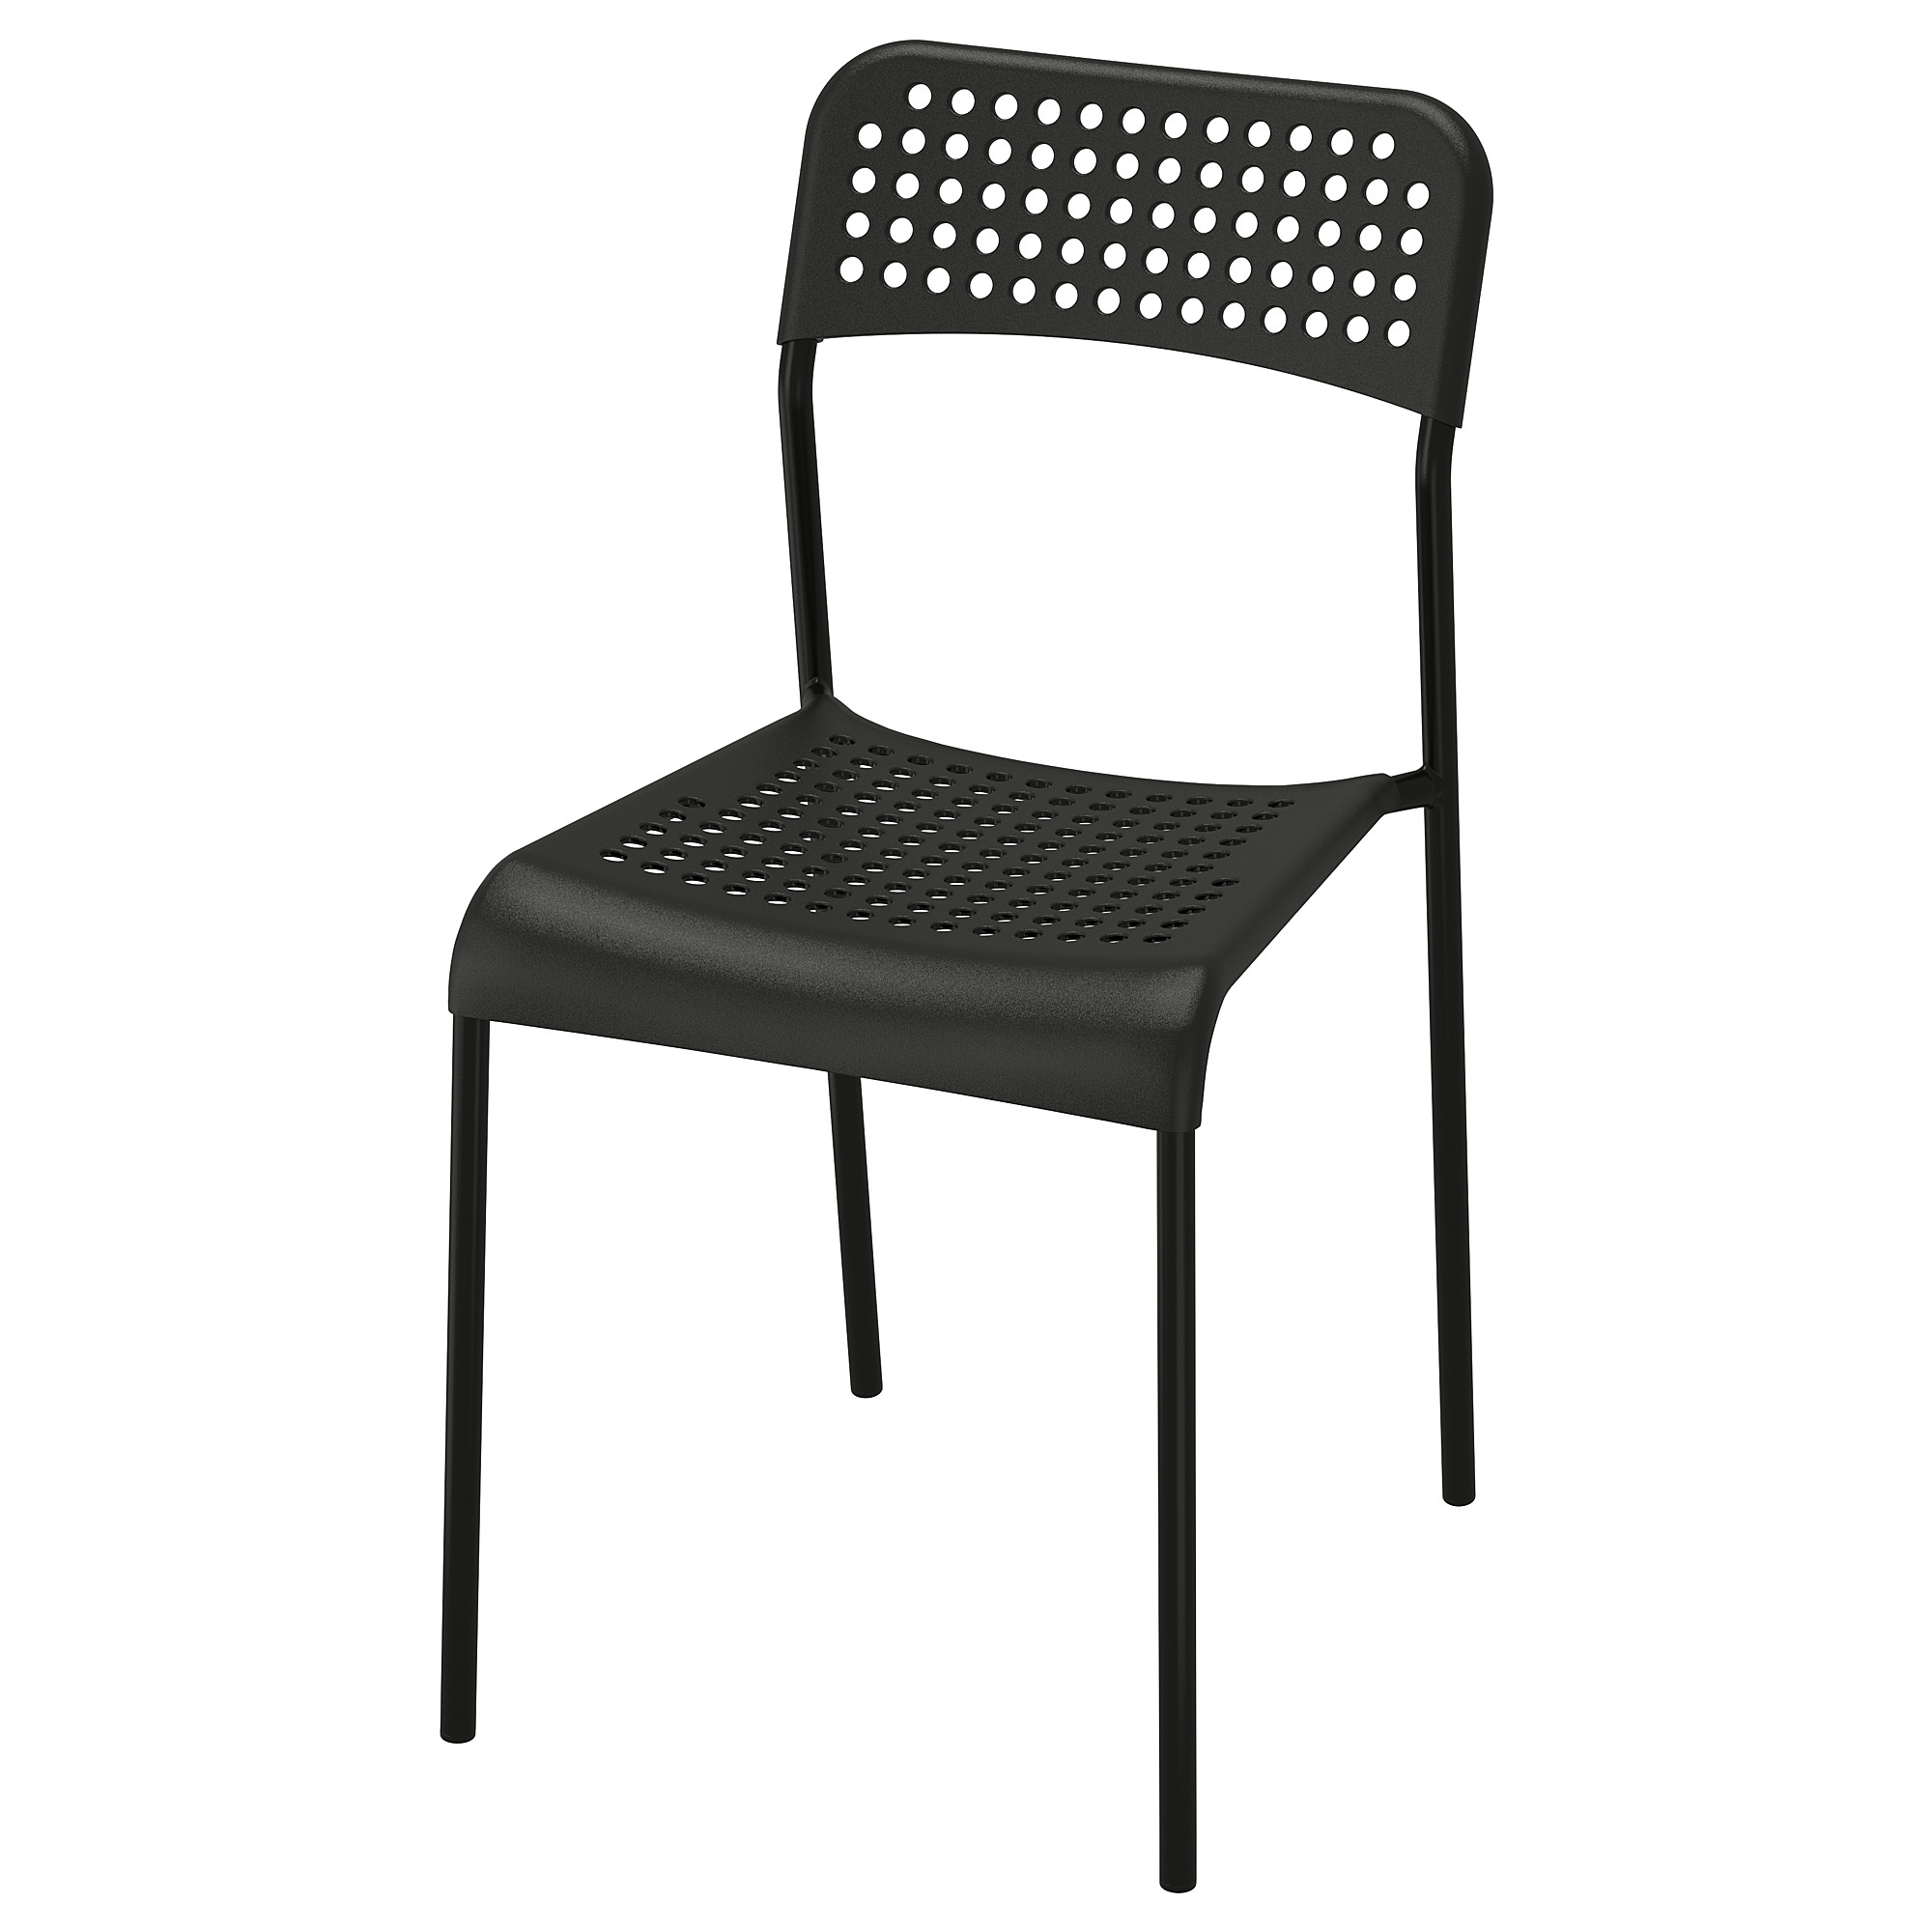 стул металлический перфорированный металлический